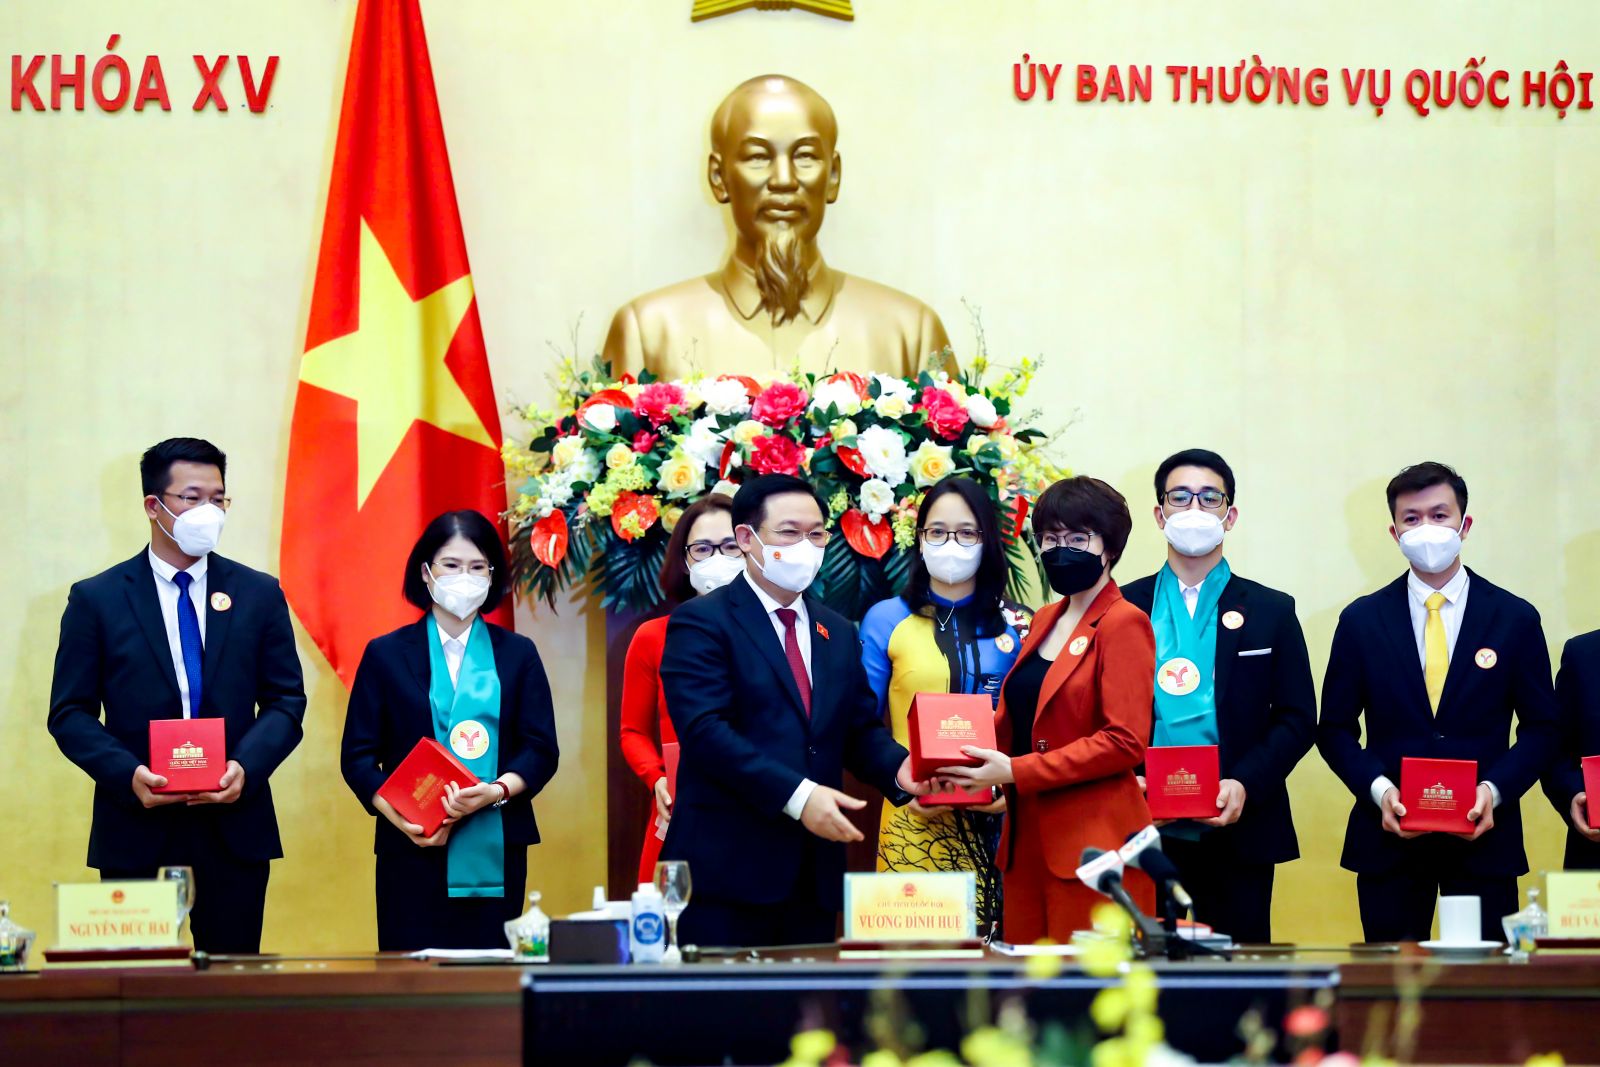 Chủ tịch Quốc hội Vương Đình Huệ tặng quà lưu niệm cho đại diện Sunshine Group cùng đại diện lãnh đạo các doanh nghiệp tiêu biểu